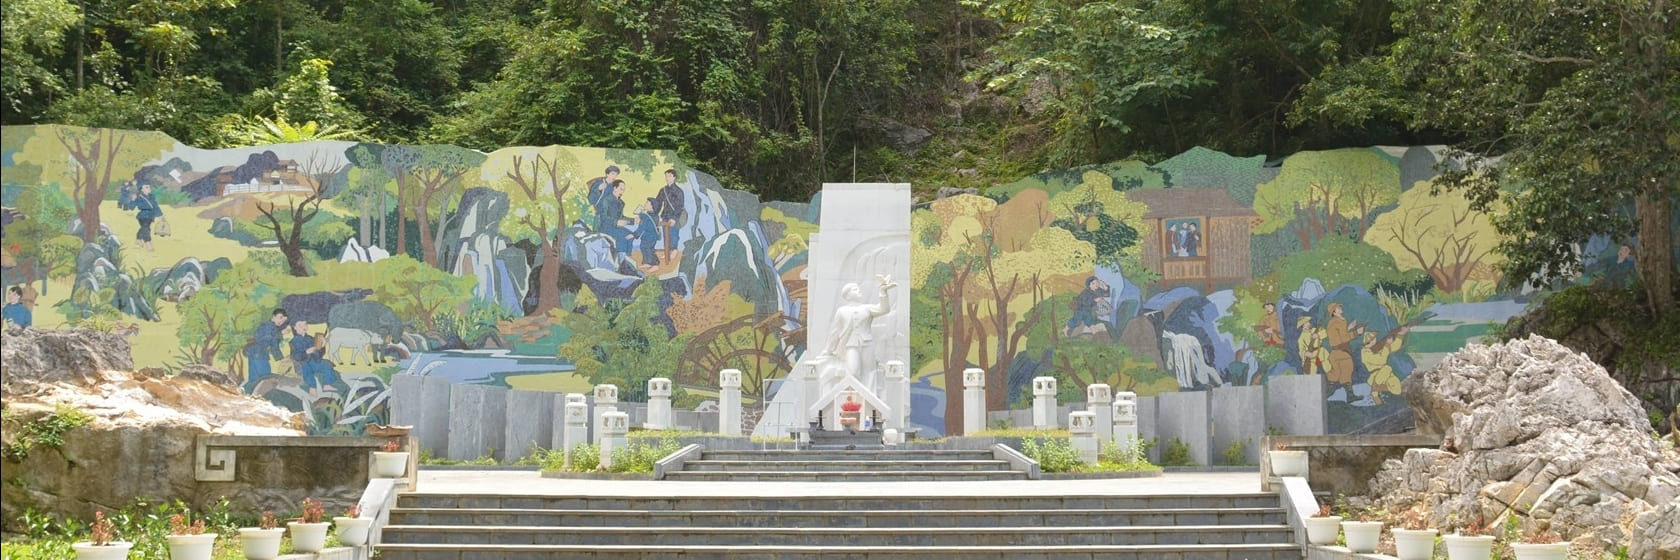 toàn cảnh bức tranh gốm mosaic tại di tích lịch sử anh hùng Kim Đồng